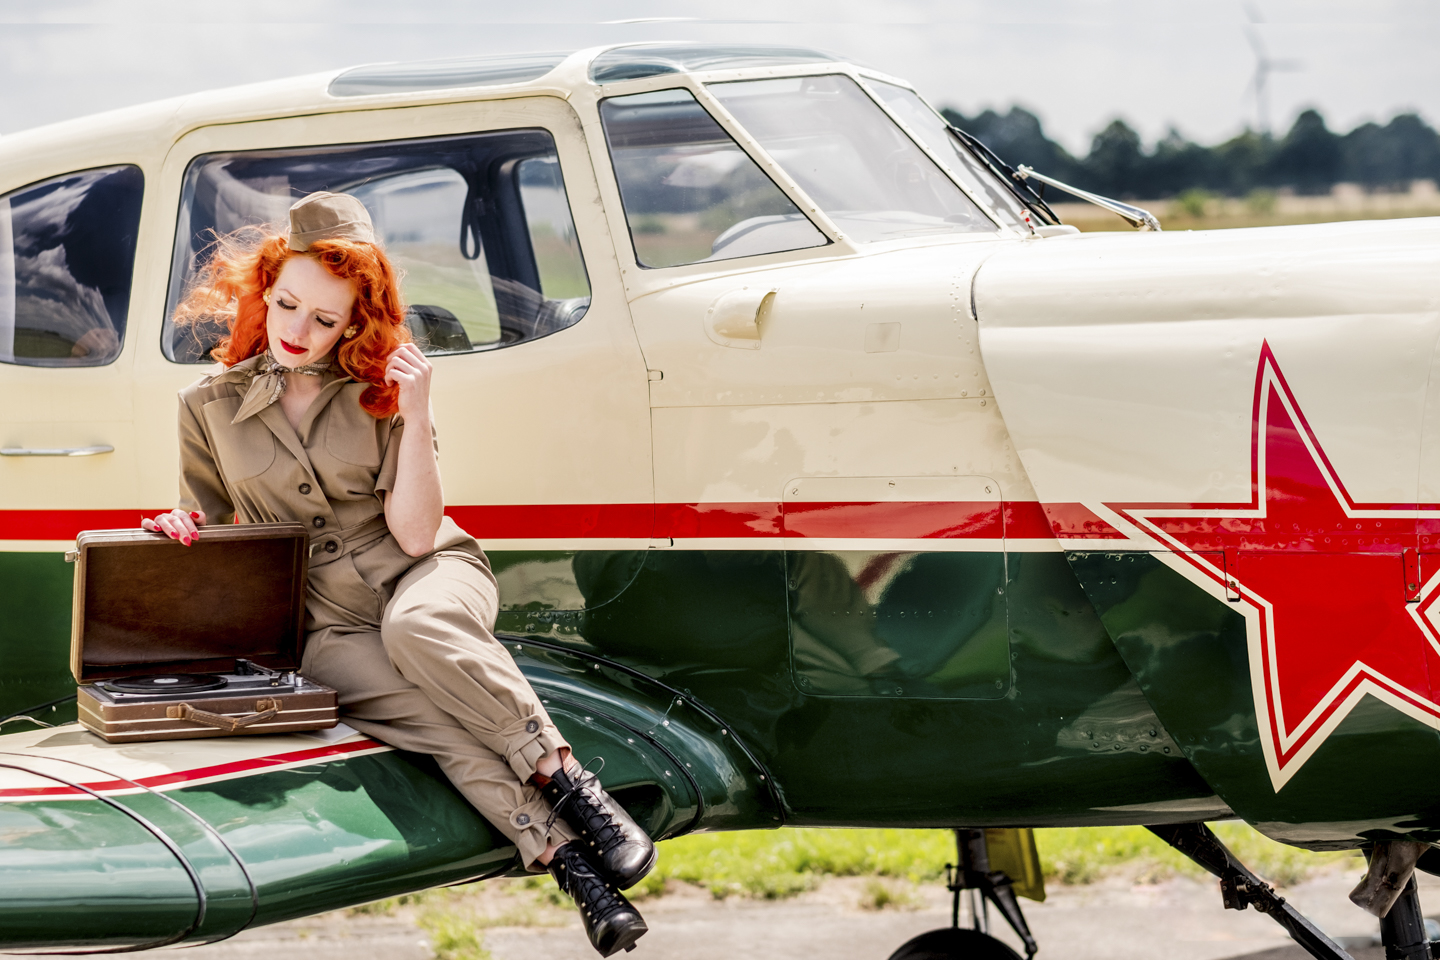 Rothaarige Frau mit beigefarbenen Pilotenanzug posiert auf dem Flügel eines kleinen Propeller Flugzeugs